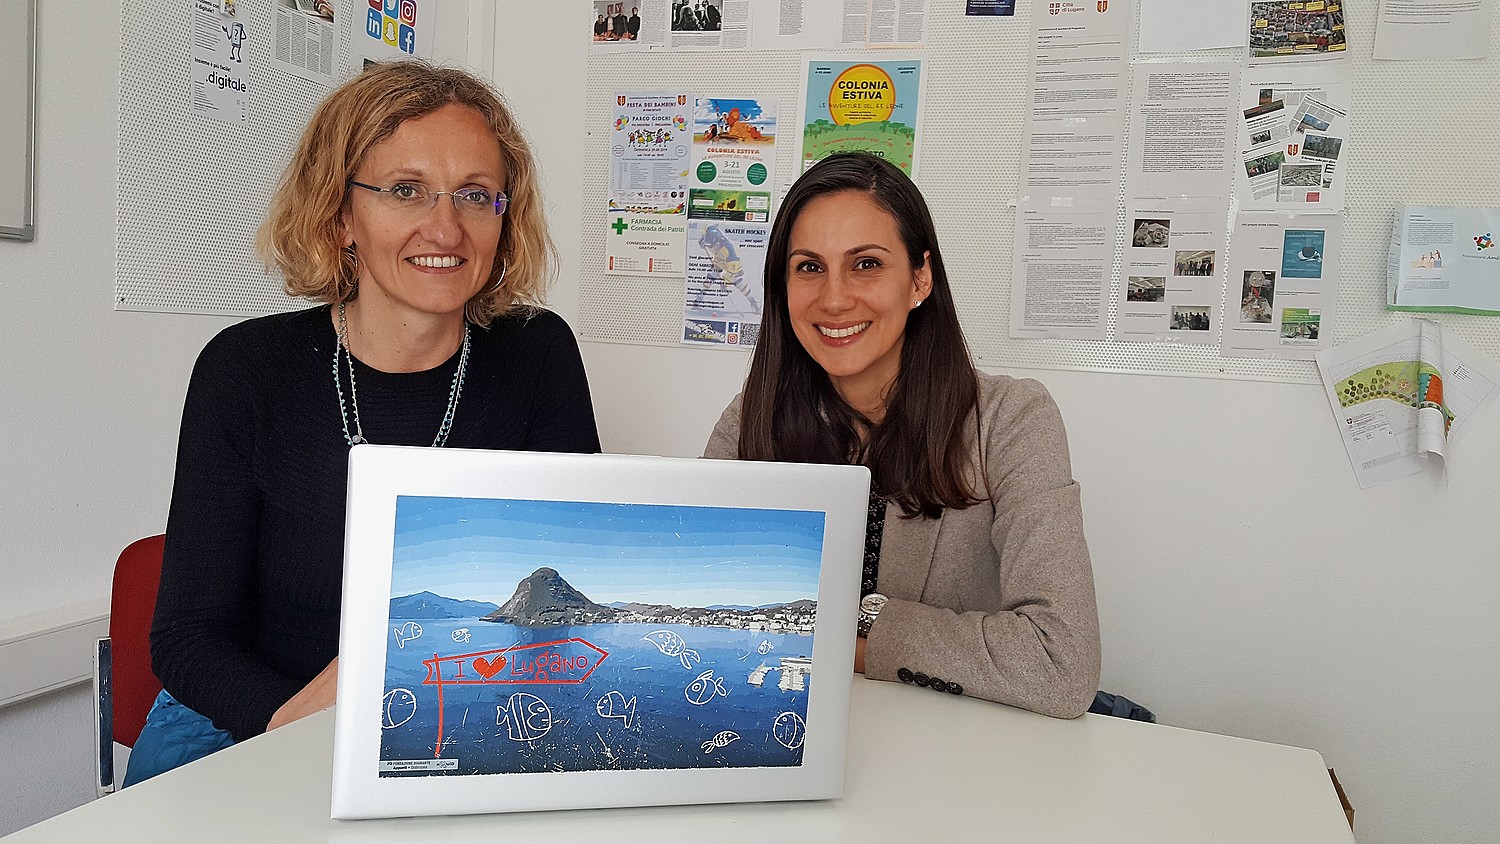 Monica Aliprandi, Leiterin des eQuiD-Projekts bei den Sozialen Diensten der Stadt Lugano (links) und Elena Marchiori, Projektverantwortliche vom Lugano Living Lab vor einem eQuiD-gestylten Laptop.